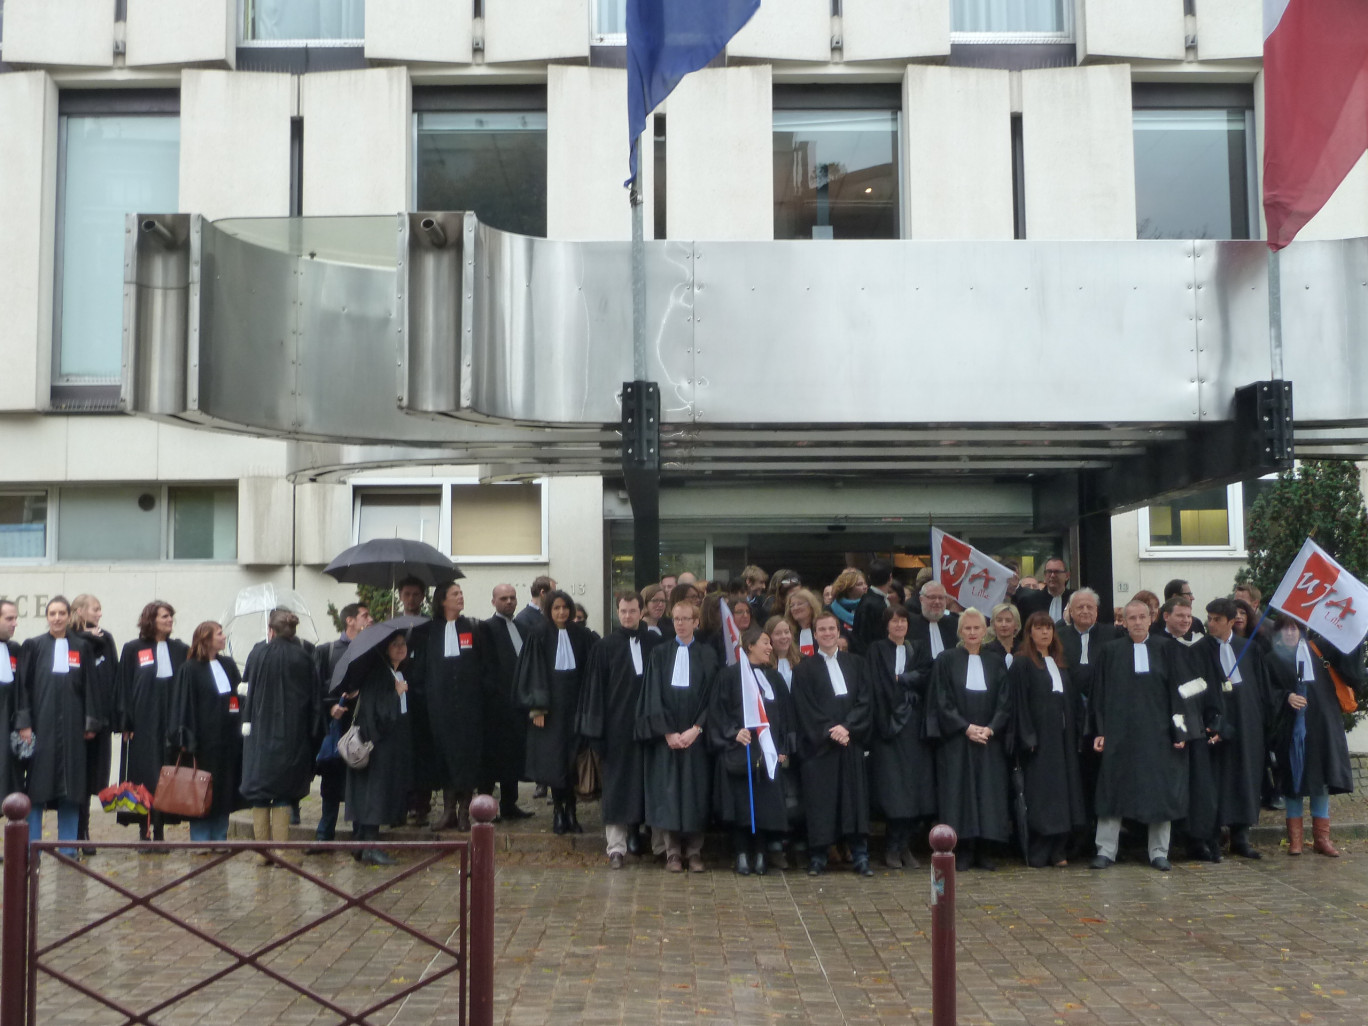 Une centaine d'avocats lillois – toutes spécialités confondues - manifestaient devant les marches du tribunal de Grande Instance le 5 novembre dernier.